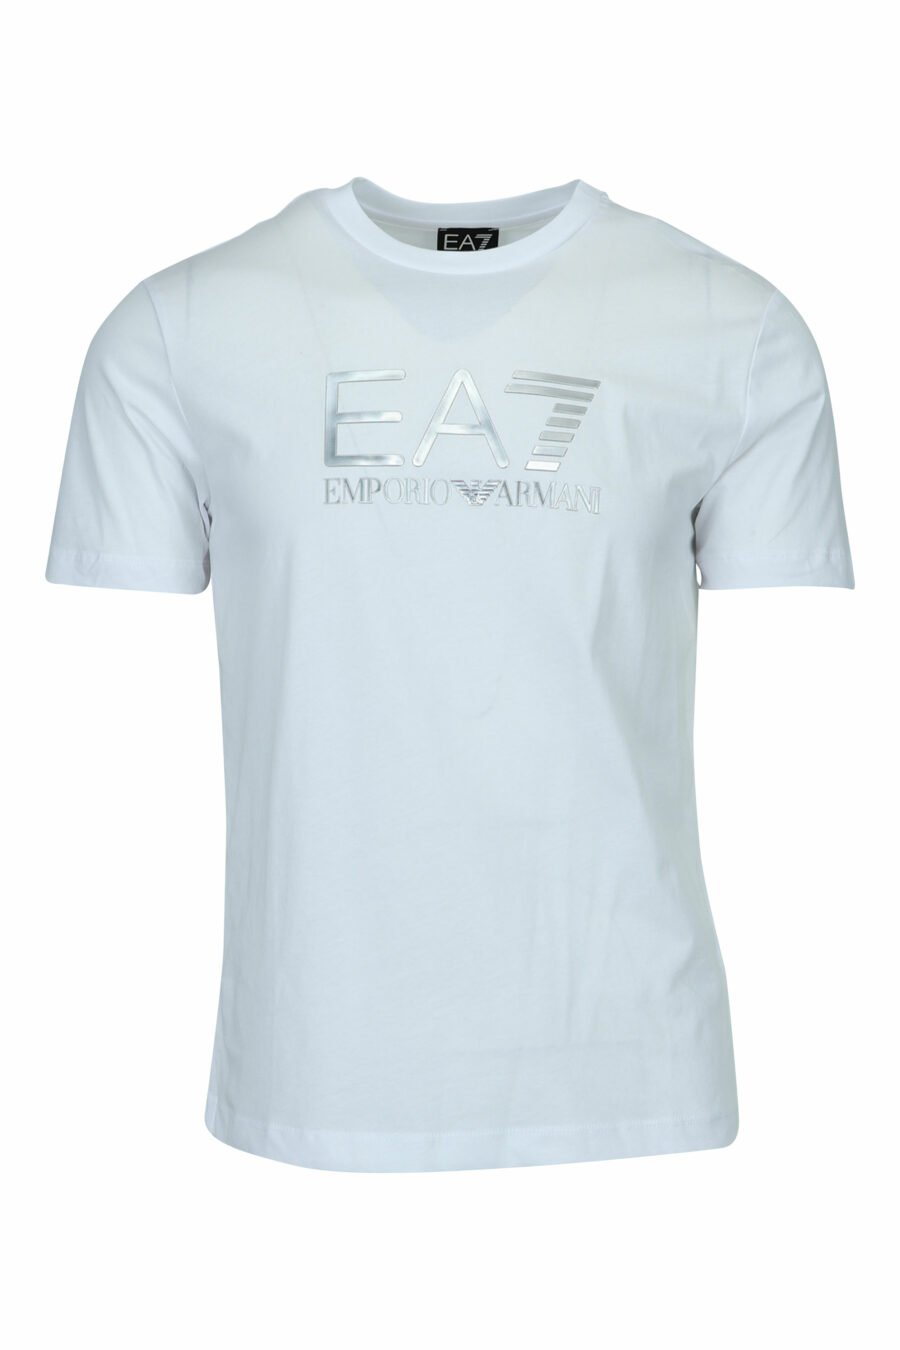 T-shirt branca com maxilogo "lux identity" em degradé - 8057970673118